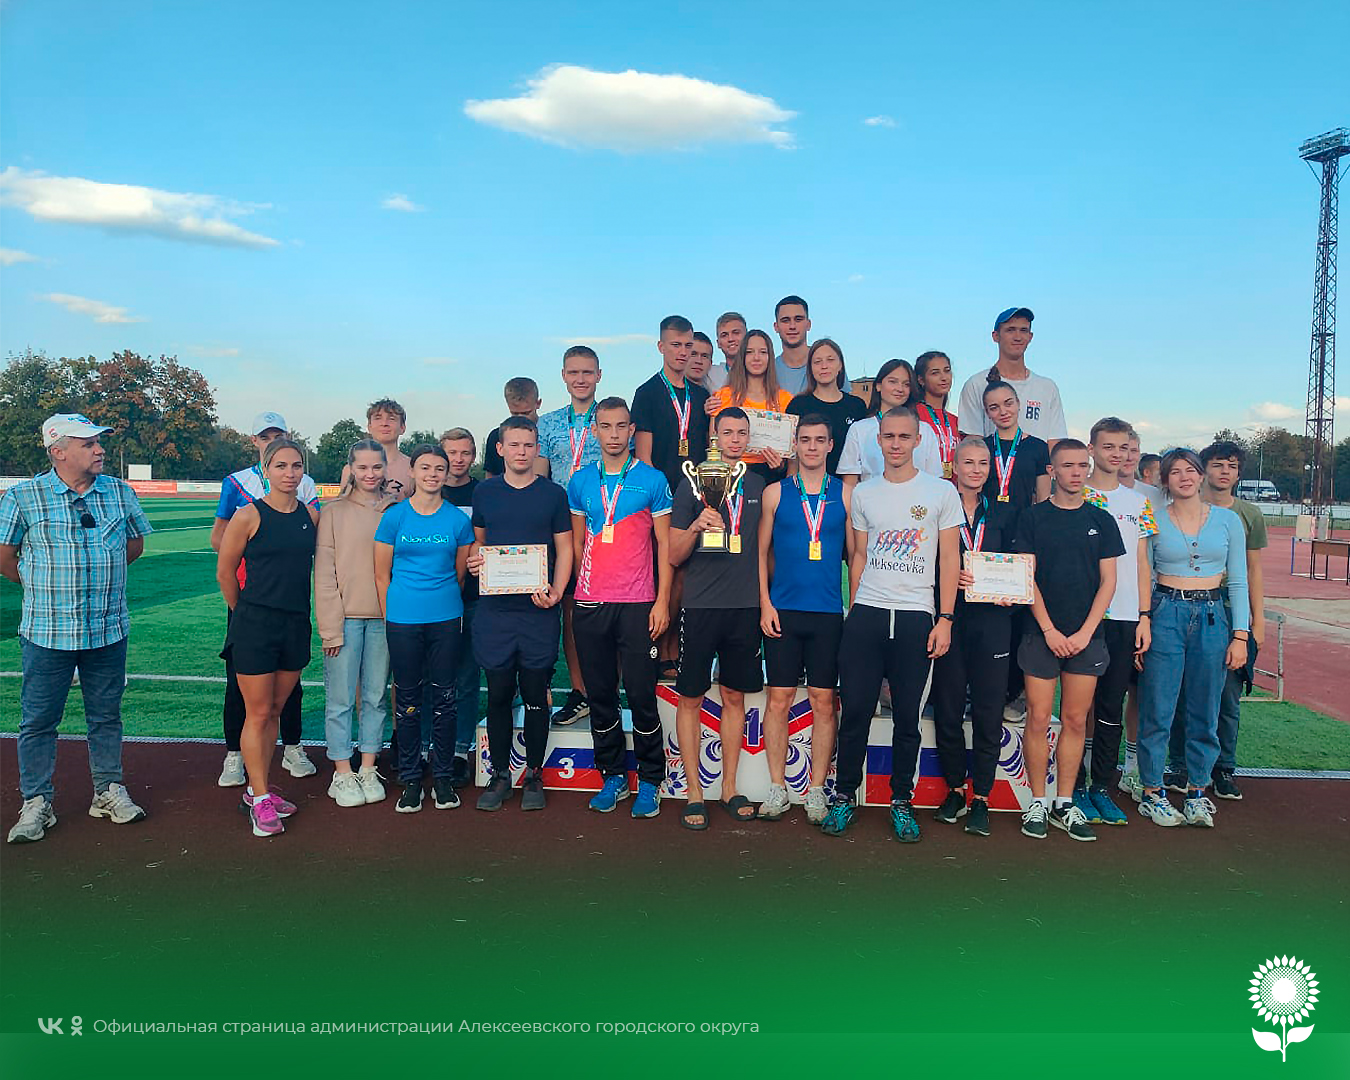 Команда Алексеевского городского округа взяла «золото» на областной спартакиаде по лёгкой атлетике.